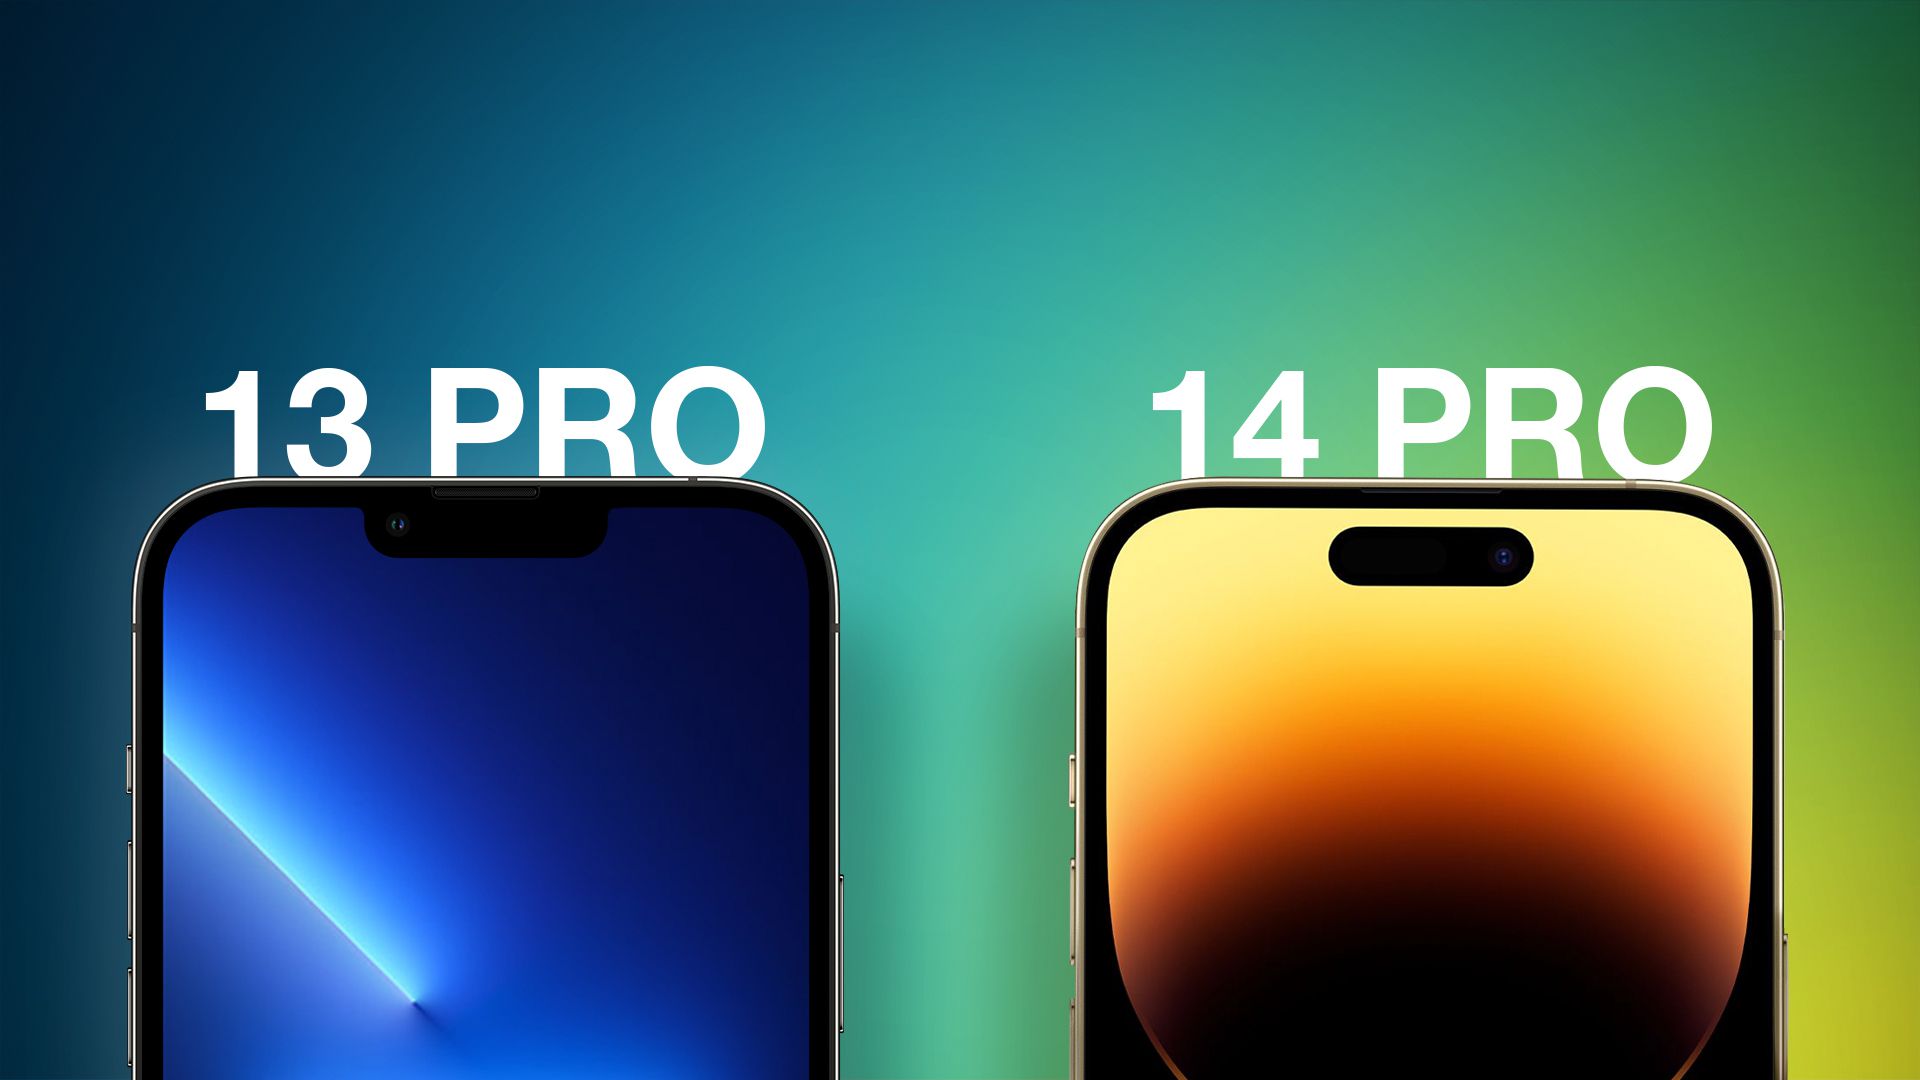 Iphone 0 pro. Айфон 14 Pro. Айфон 13. Iphone 13 Pro и iphone 14 Pro. Айфон 13 vs 14.